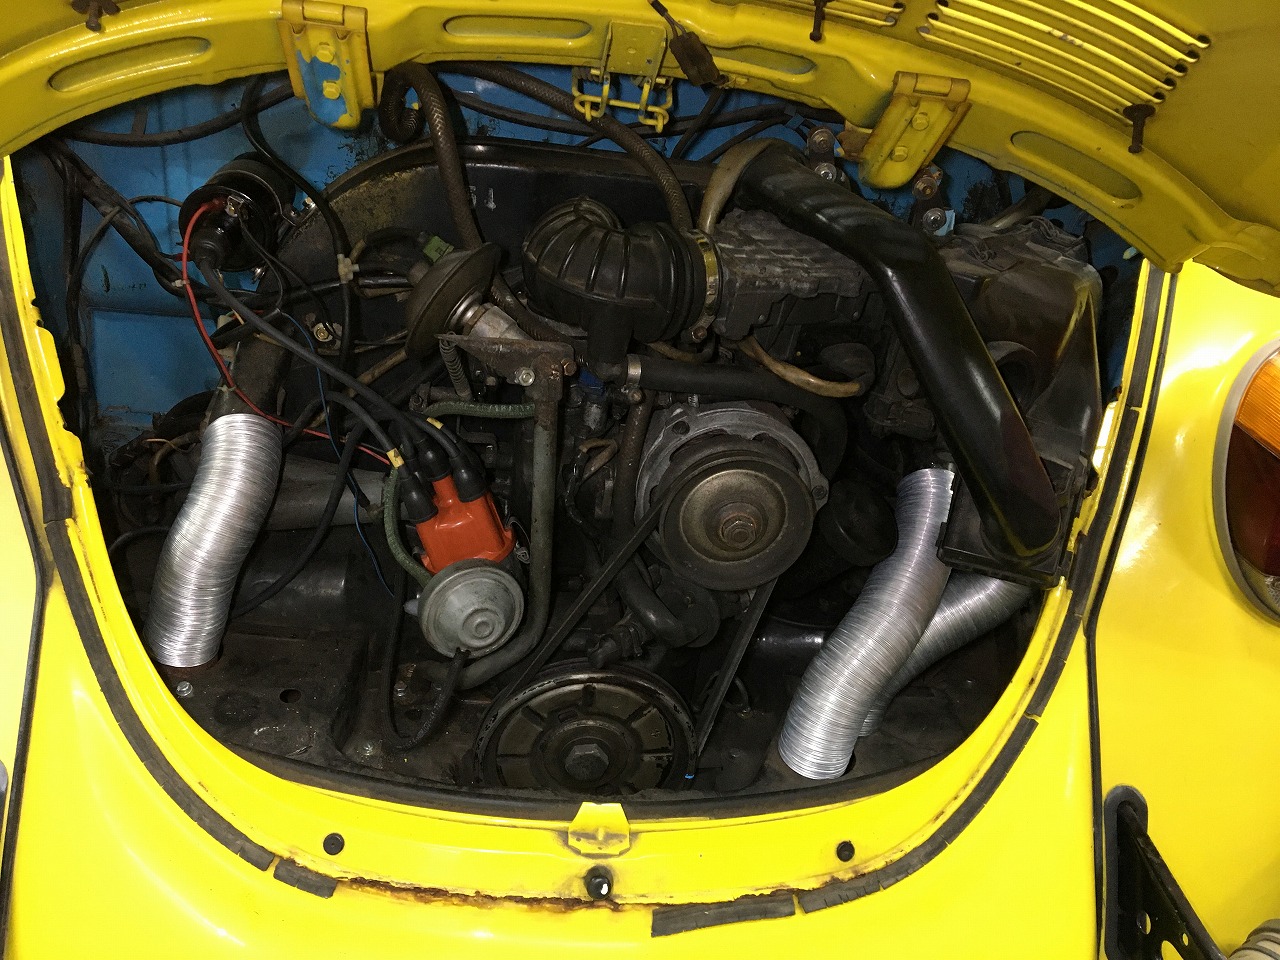 1976-79 1600cc と言えば インジェクション と 部品事情 Aircooled VW